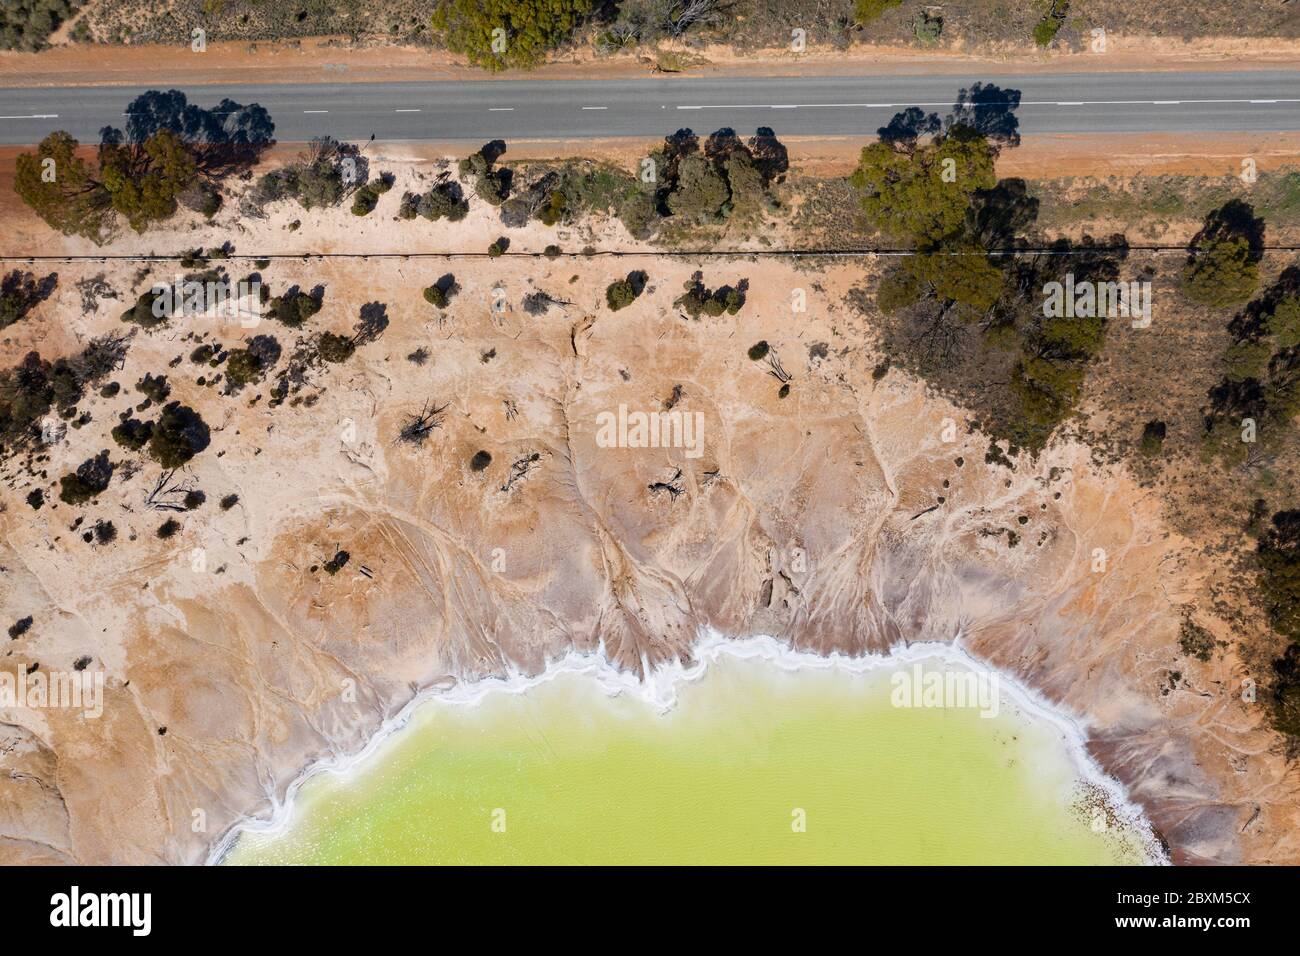 Luftaufnahme des schönen gelben Salzsees, bekannt als Statuensee, der sich neben dem Highway 40 in der Wheatbelt Region von Western Australia befindet Stockfoto